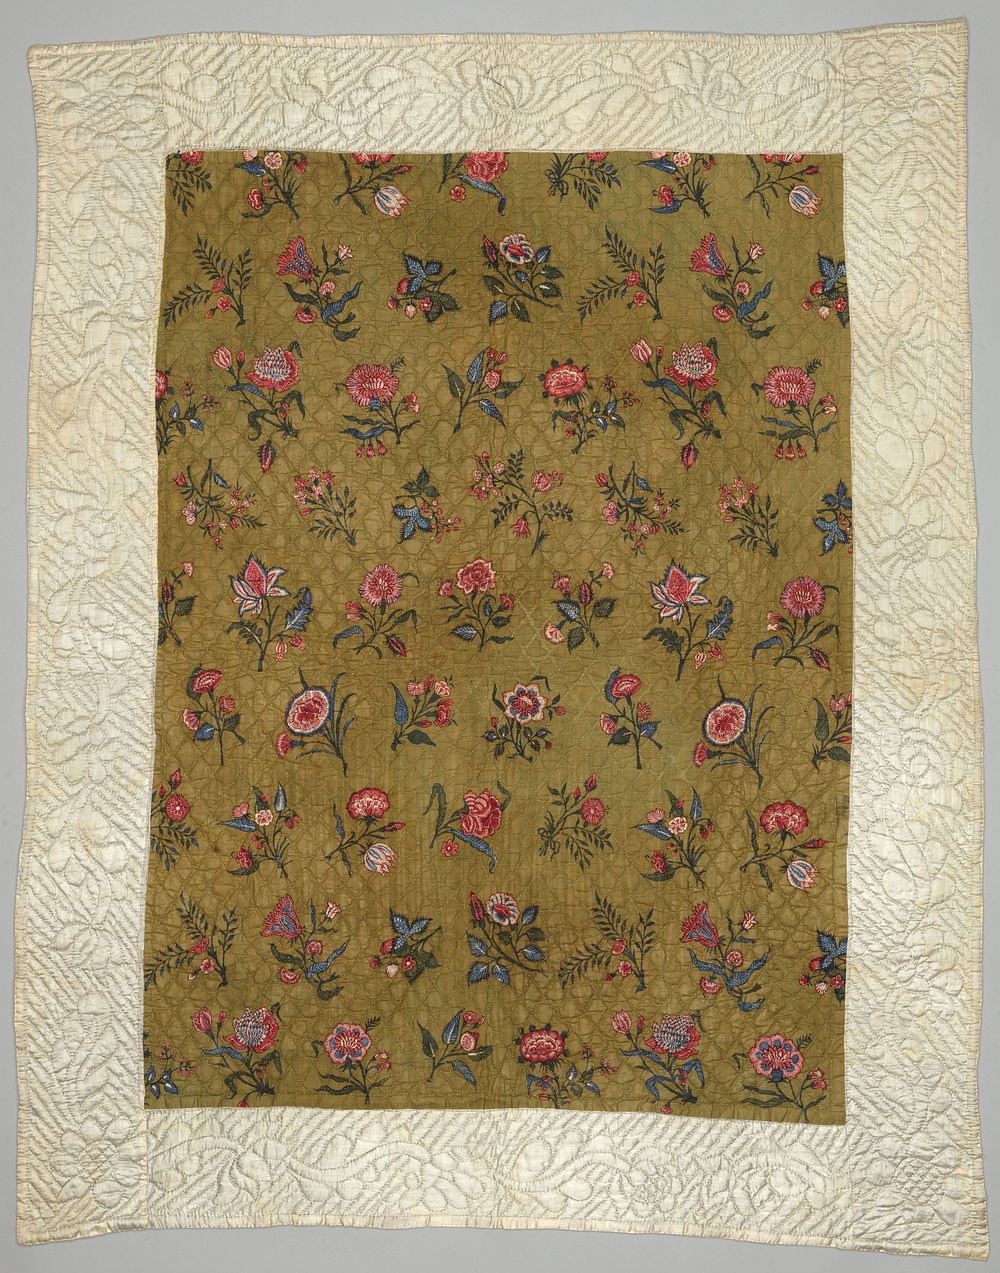 Kindersprei van sits met gestrooid bloemenpatroon (c. 1740 - c. 1750) by anonymous